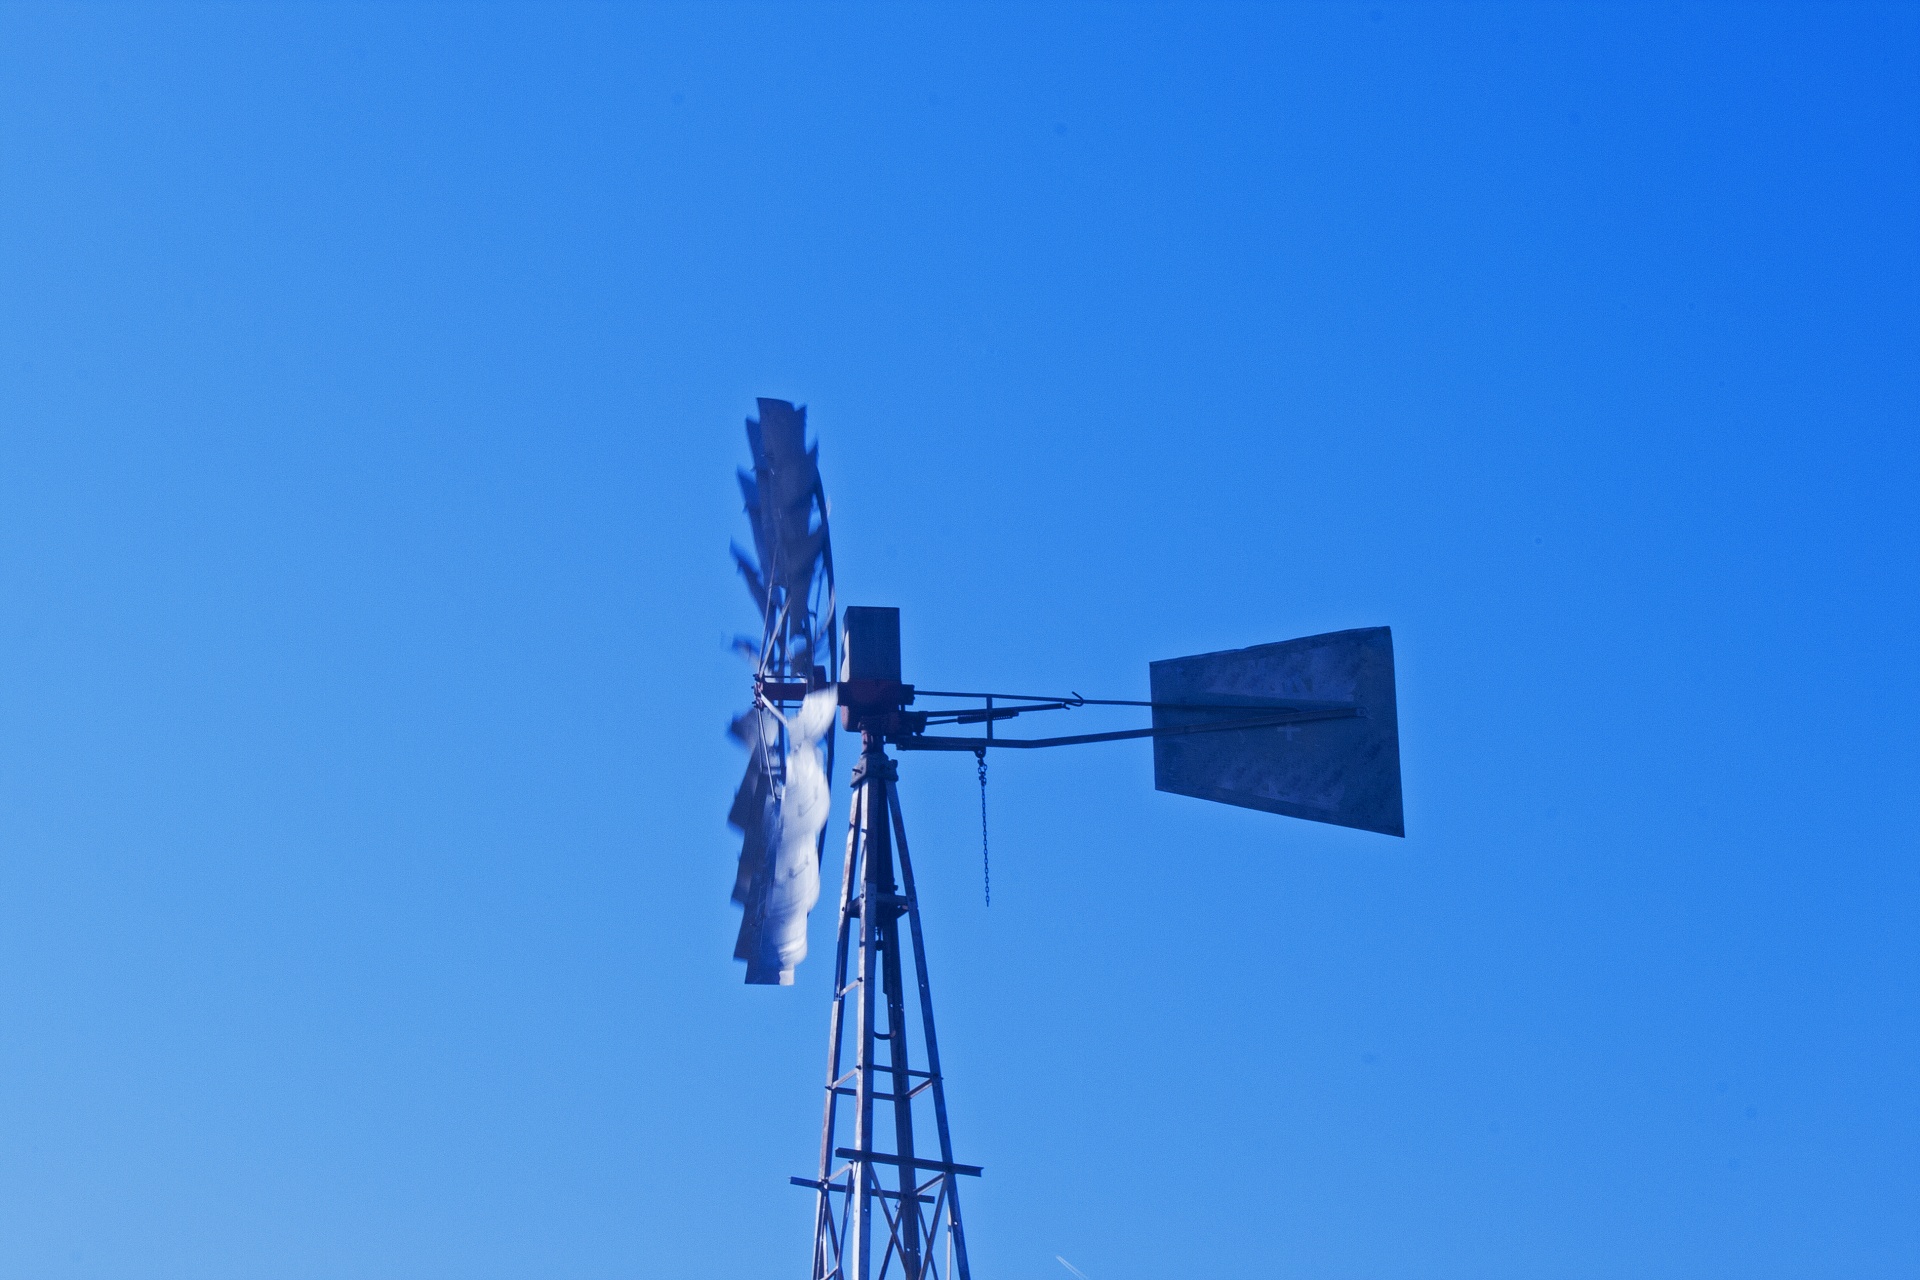 Pohybující se větrný mlýn proti modré ob